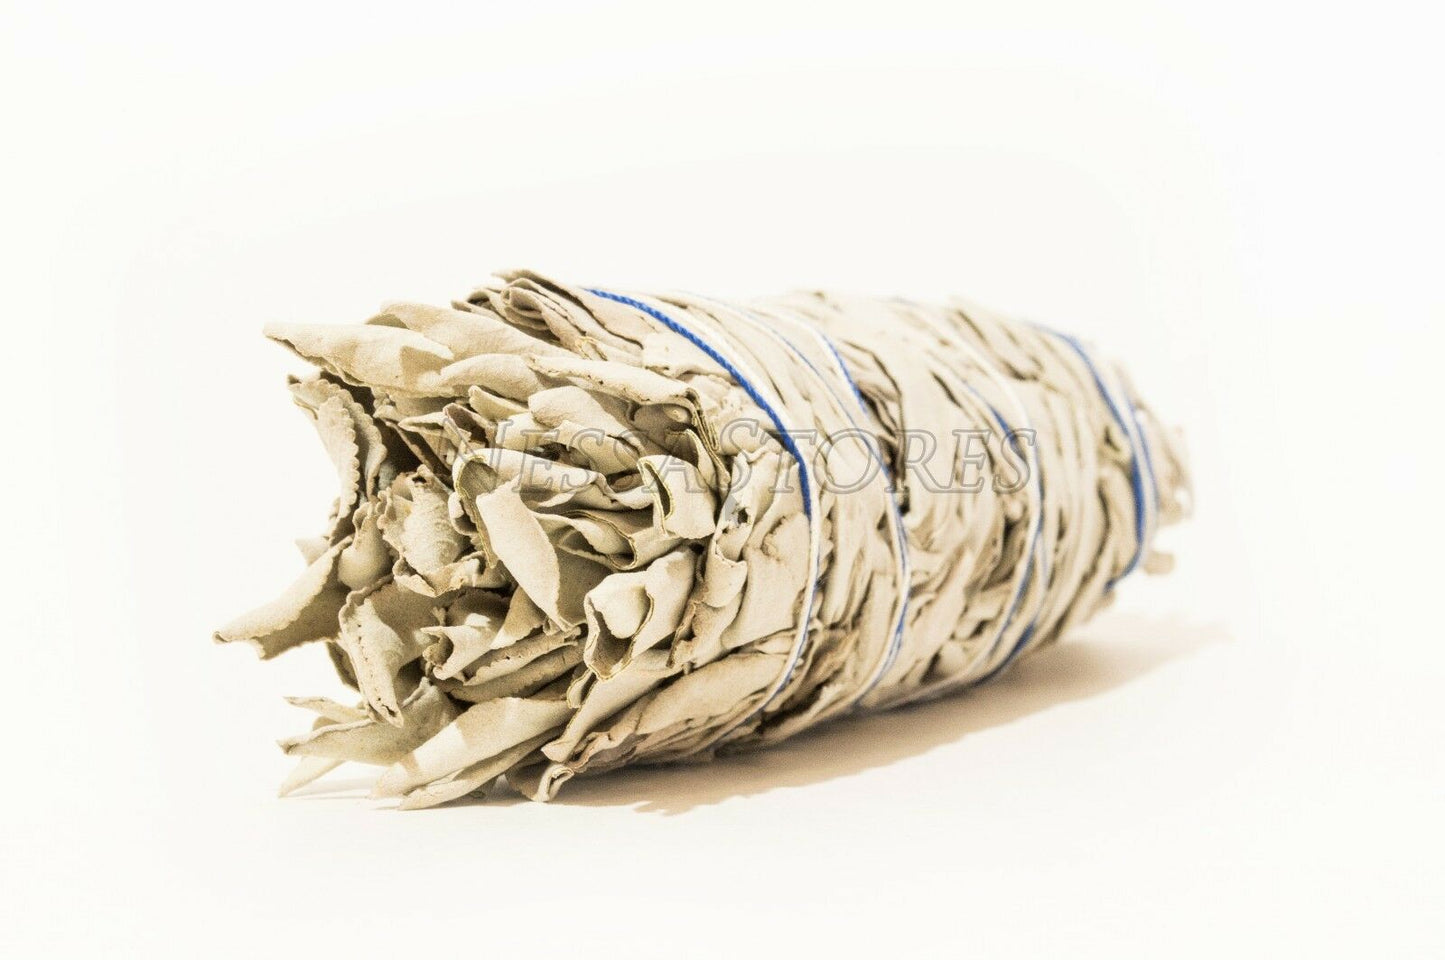 NessaStores California White Sage Smudge Incense 7"-8" Bundle (2 pcs) #JC-009